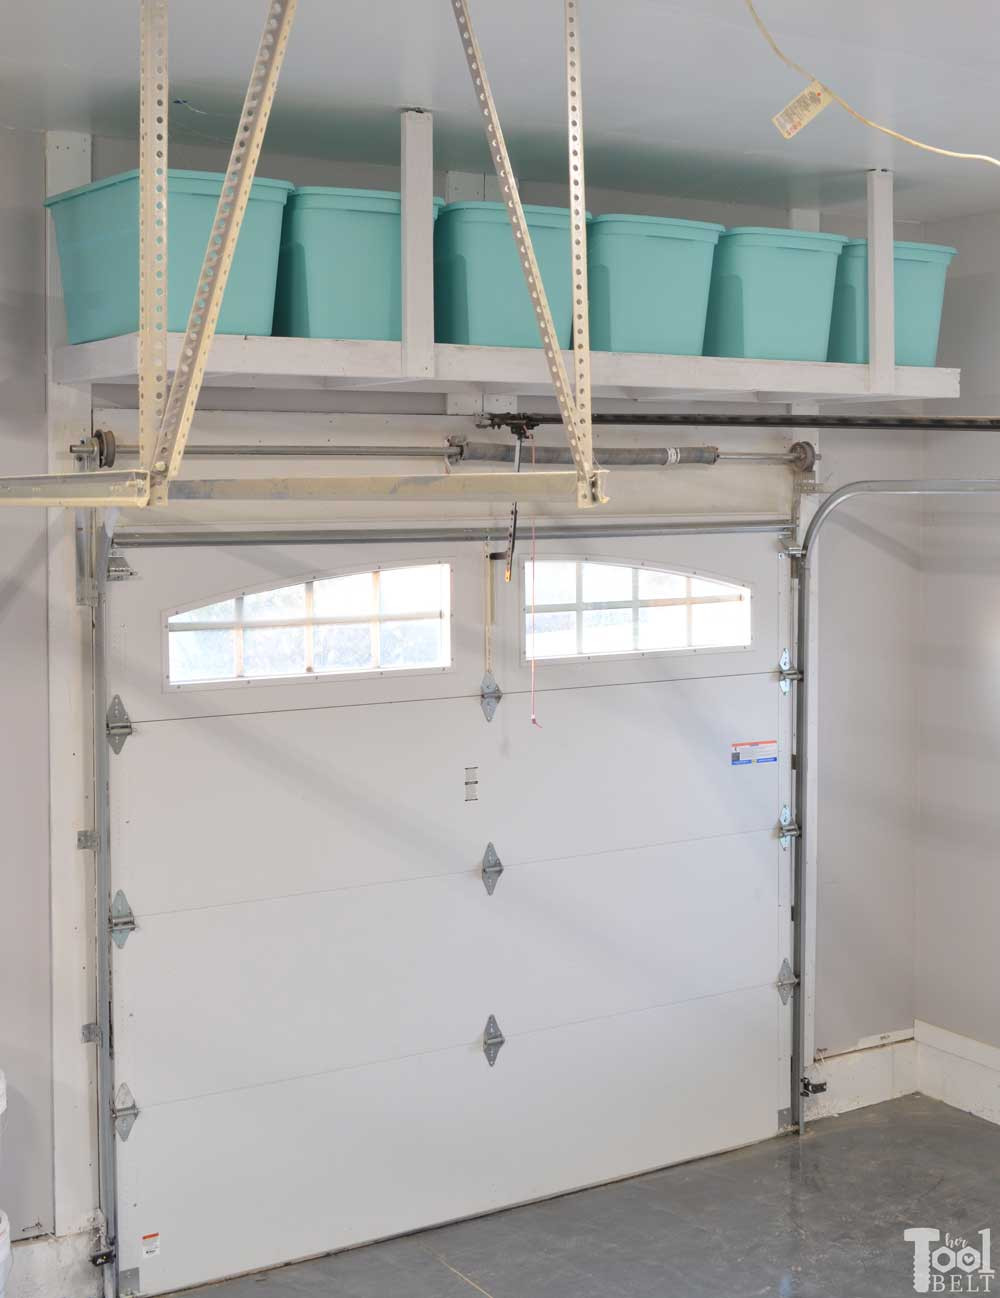 Best ideas about Overhead Garage Storage DIY
. Save or Pin Overhead Garage Storage Shelf Her Tool Belt Now.